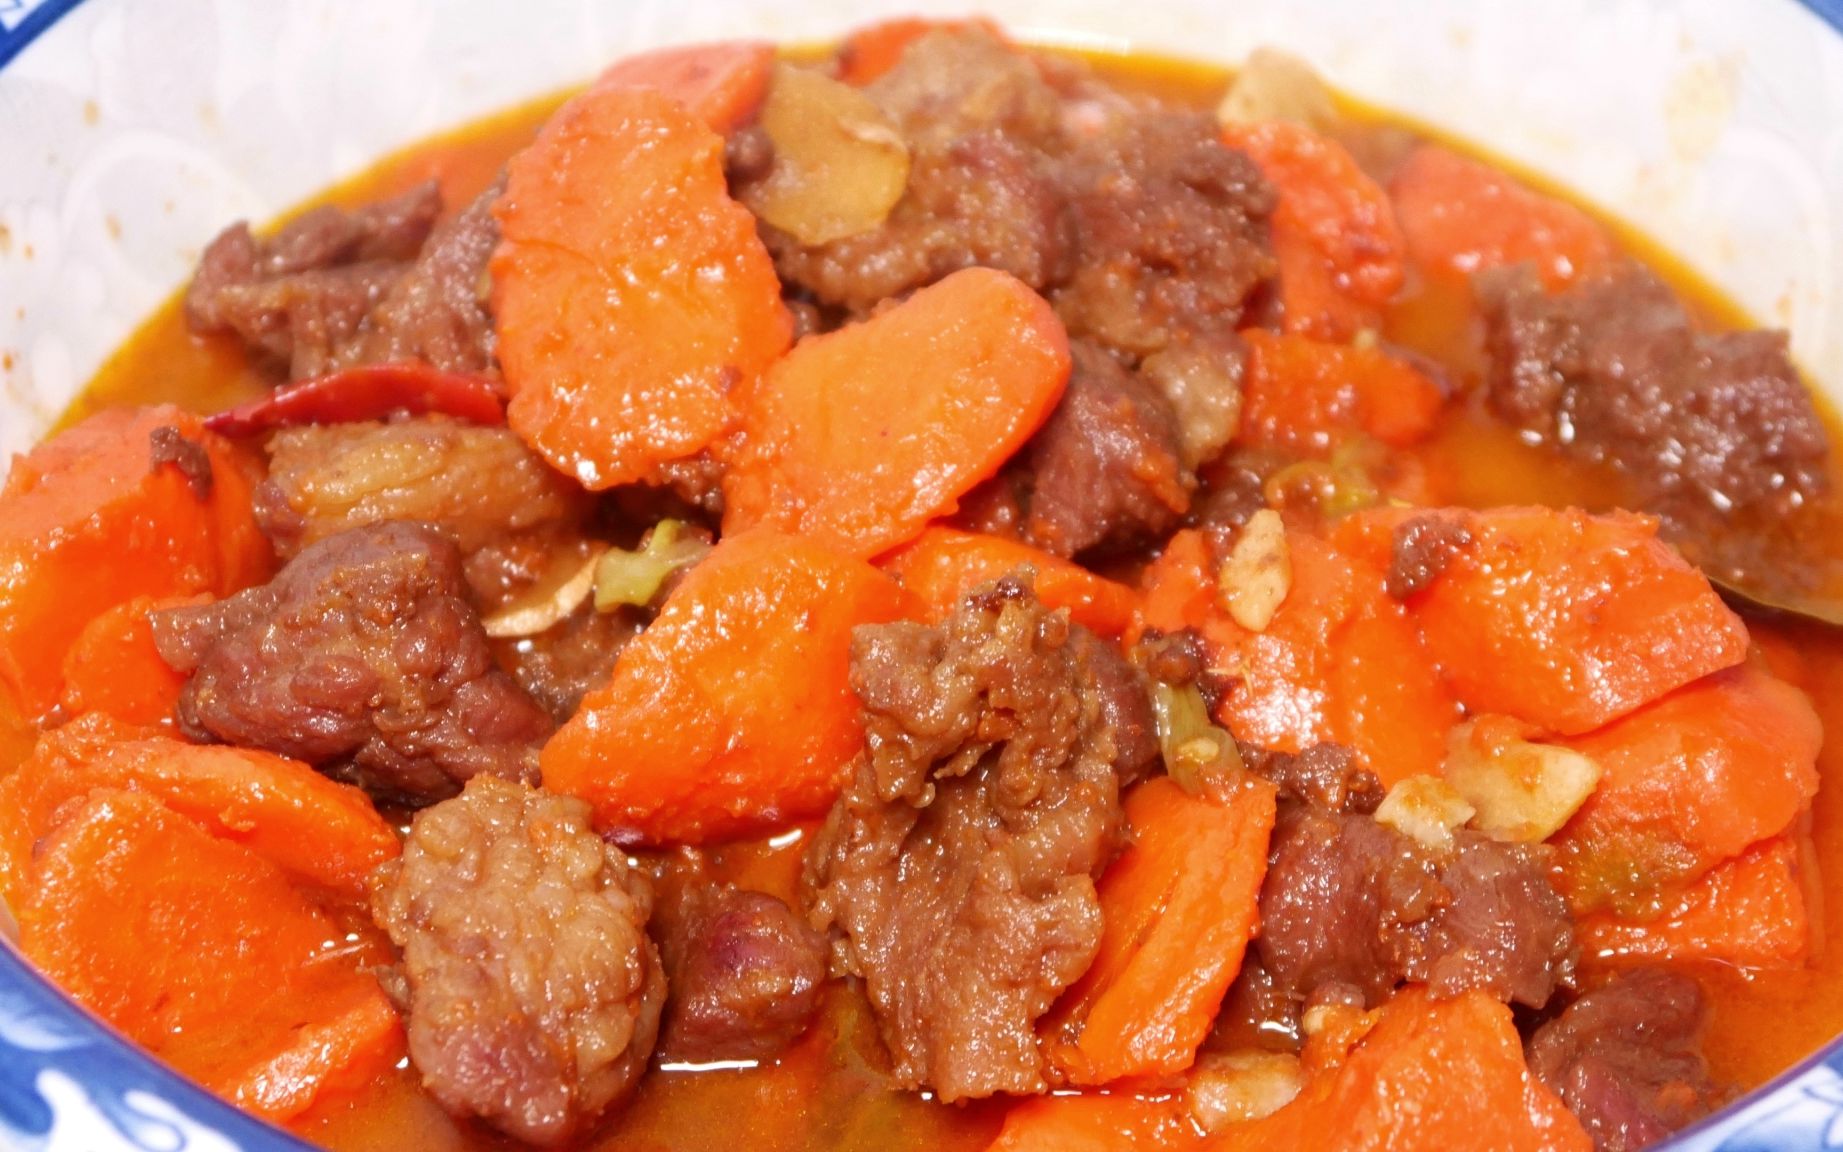 胡萝卜炖牛肉,做法配料详细演示,鲜香味美,一次多吃三碗饭